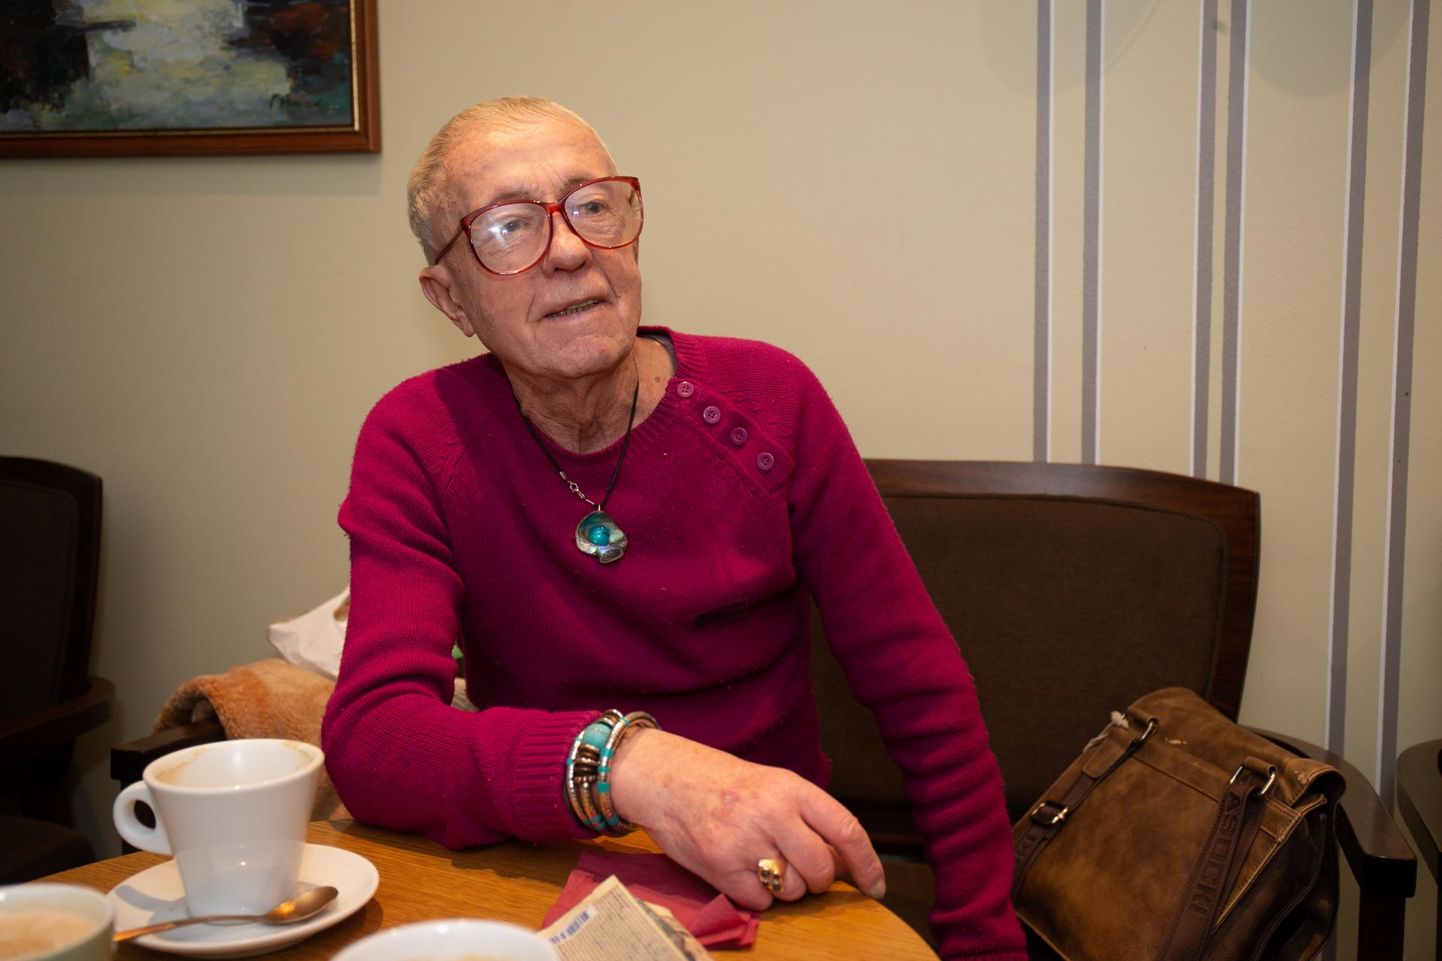 Täna saab 90-aastaseks Kalju Konsin, kes on sündinud 23. jaanuaril 1929 Võõpste külas taluniku peres, lõpetanud Tartu 1. keskkooli ja põllumajandusakadeemia ning töötanud veerand sajandit etnograafiamuuseumis.